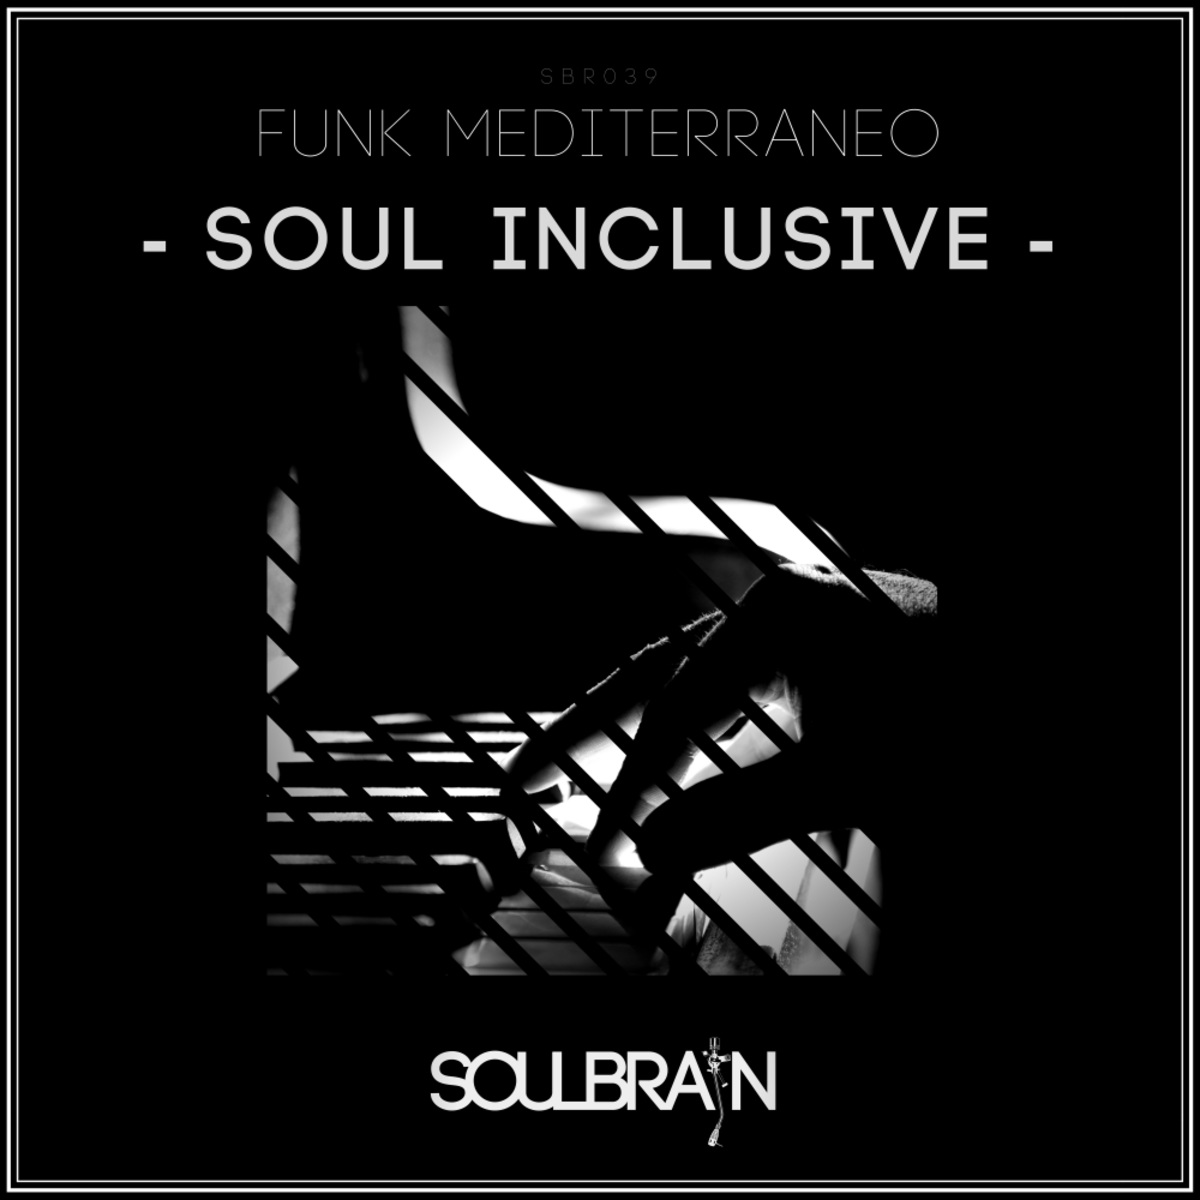 Funk Mediterraneo - Soul Inclusive / Soul Brain Records